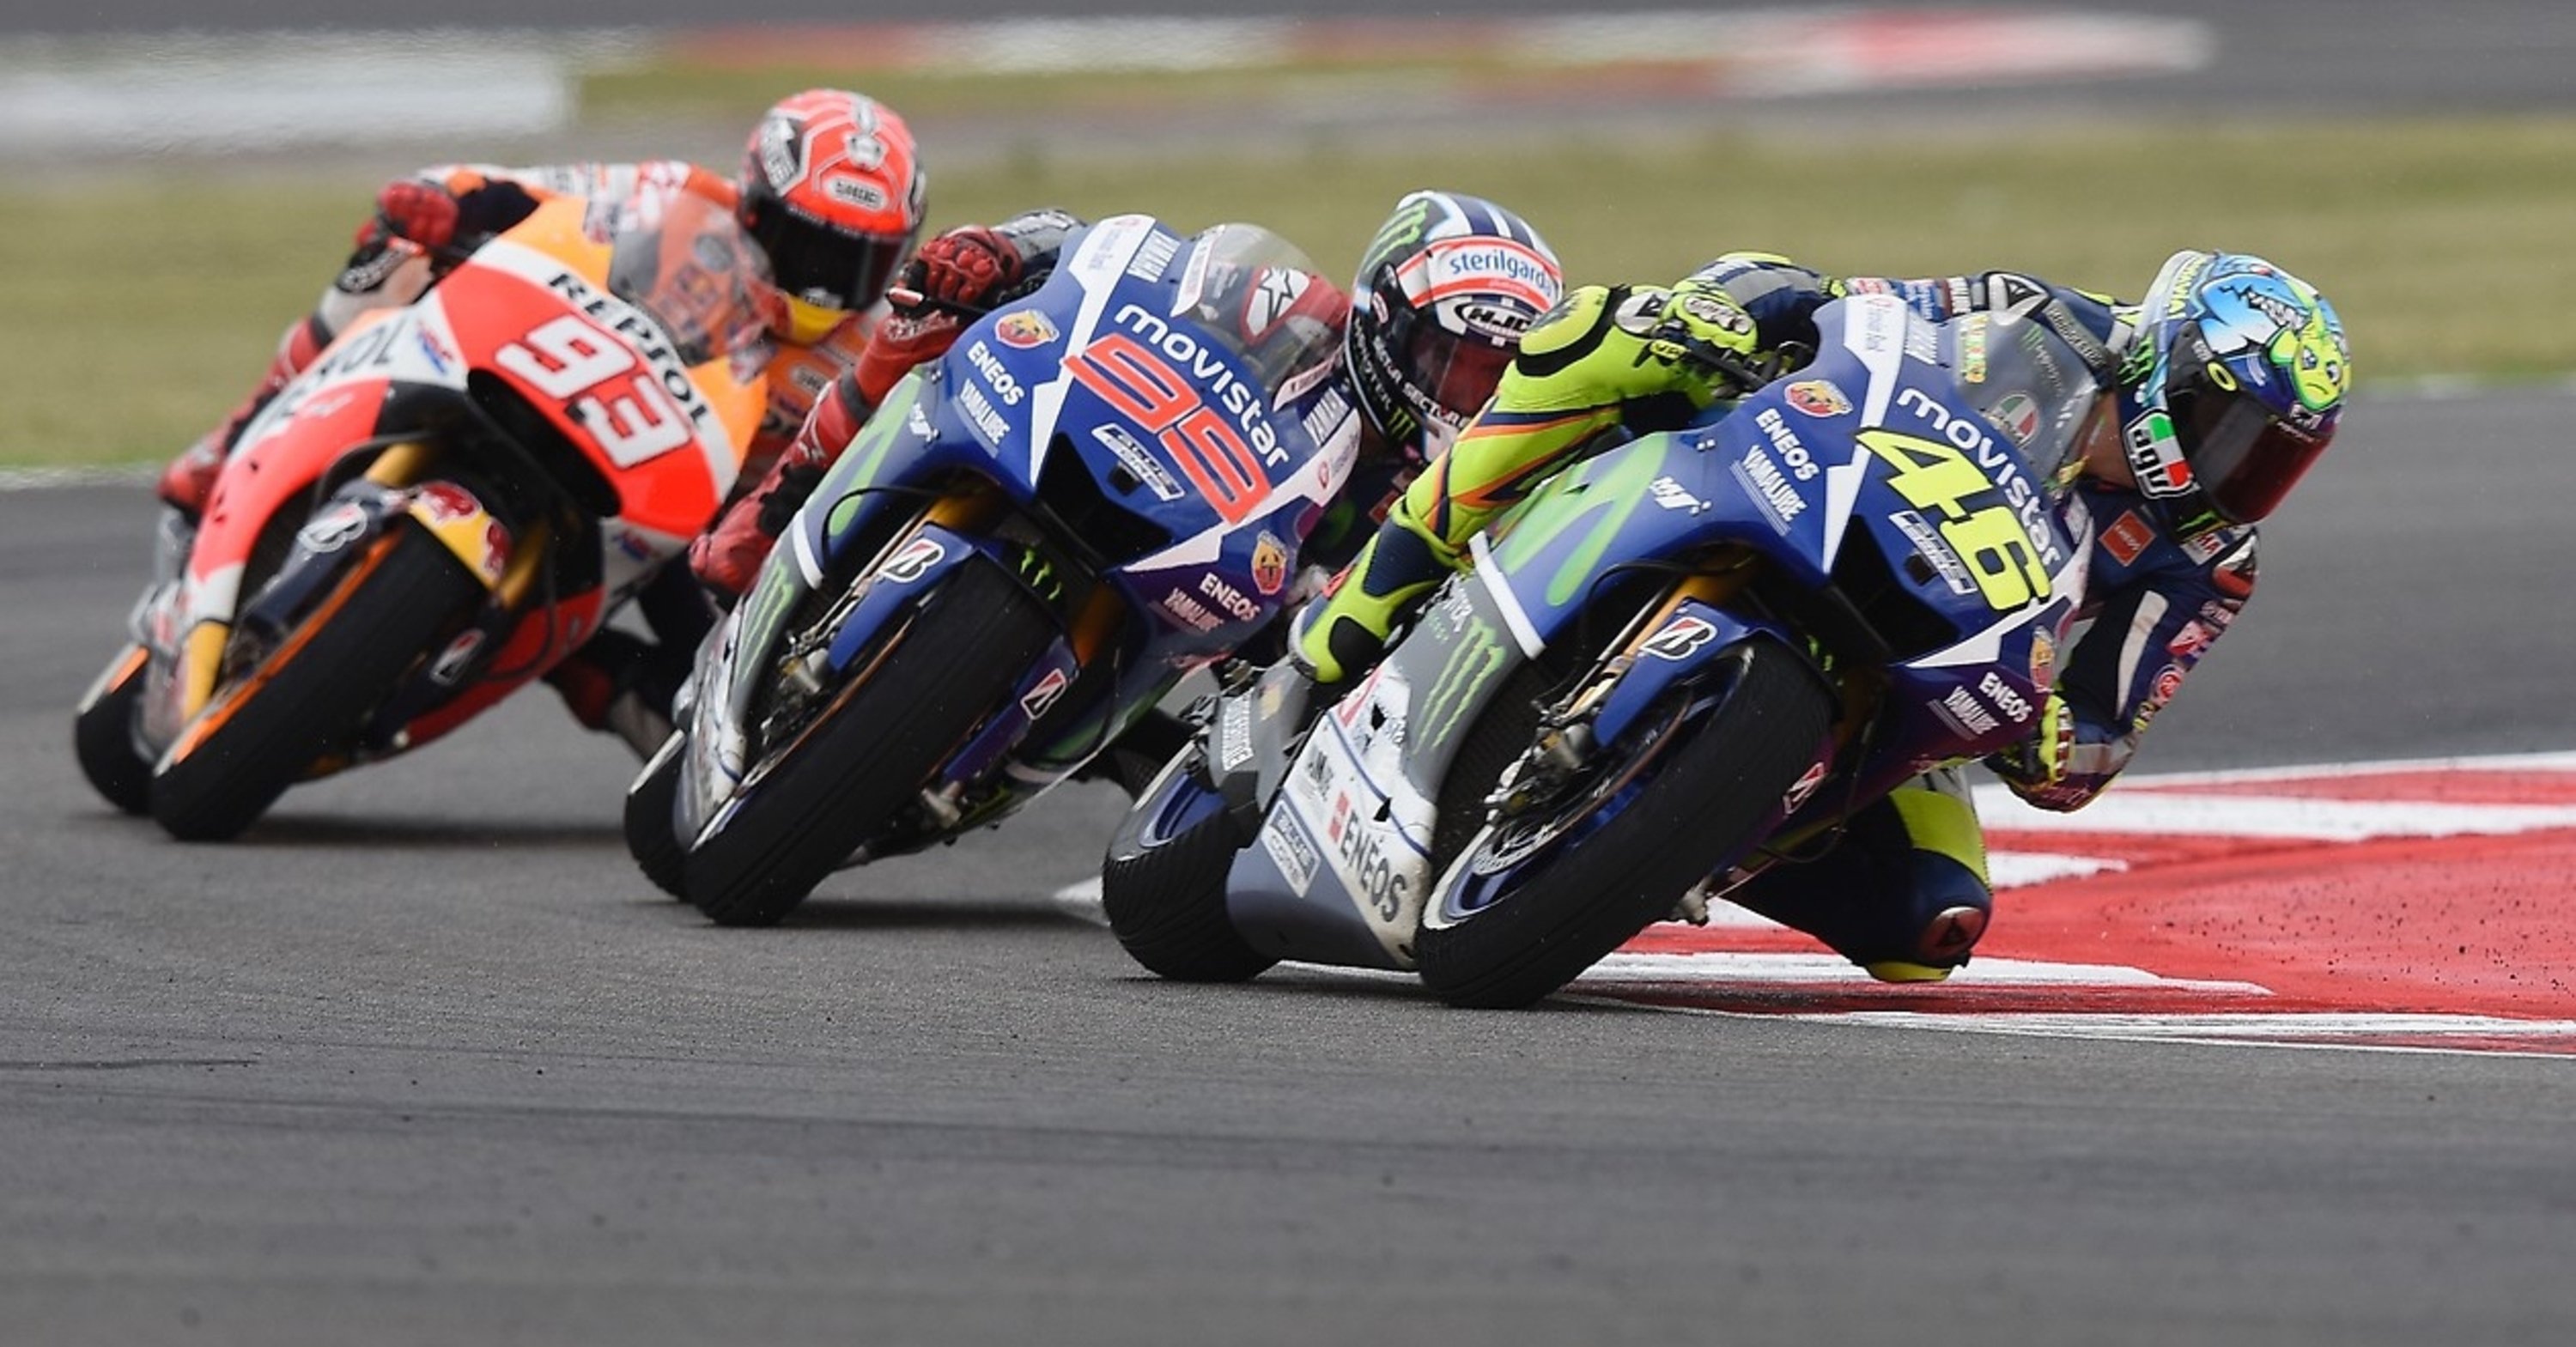 MotoGP, Misano 2015. Spunti considerazioni e domande dopo la gara